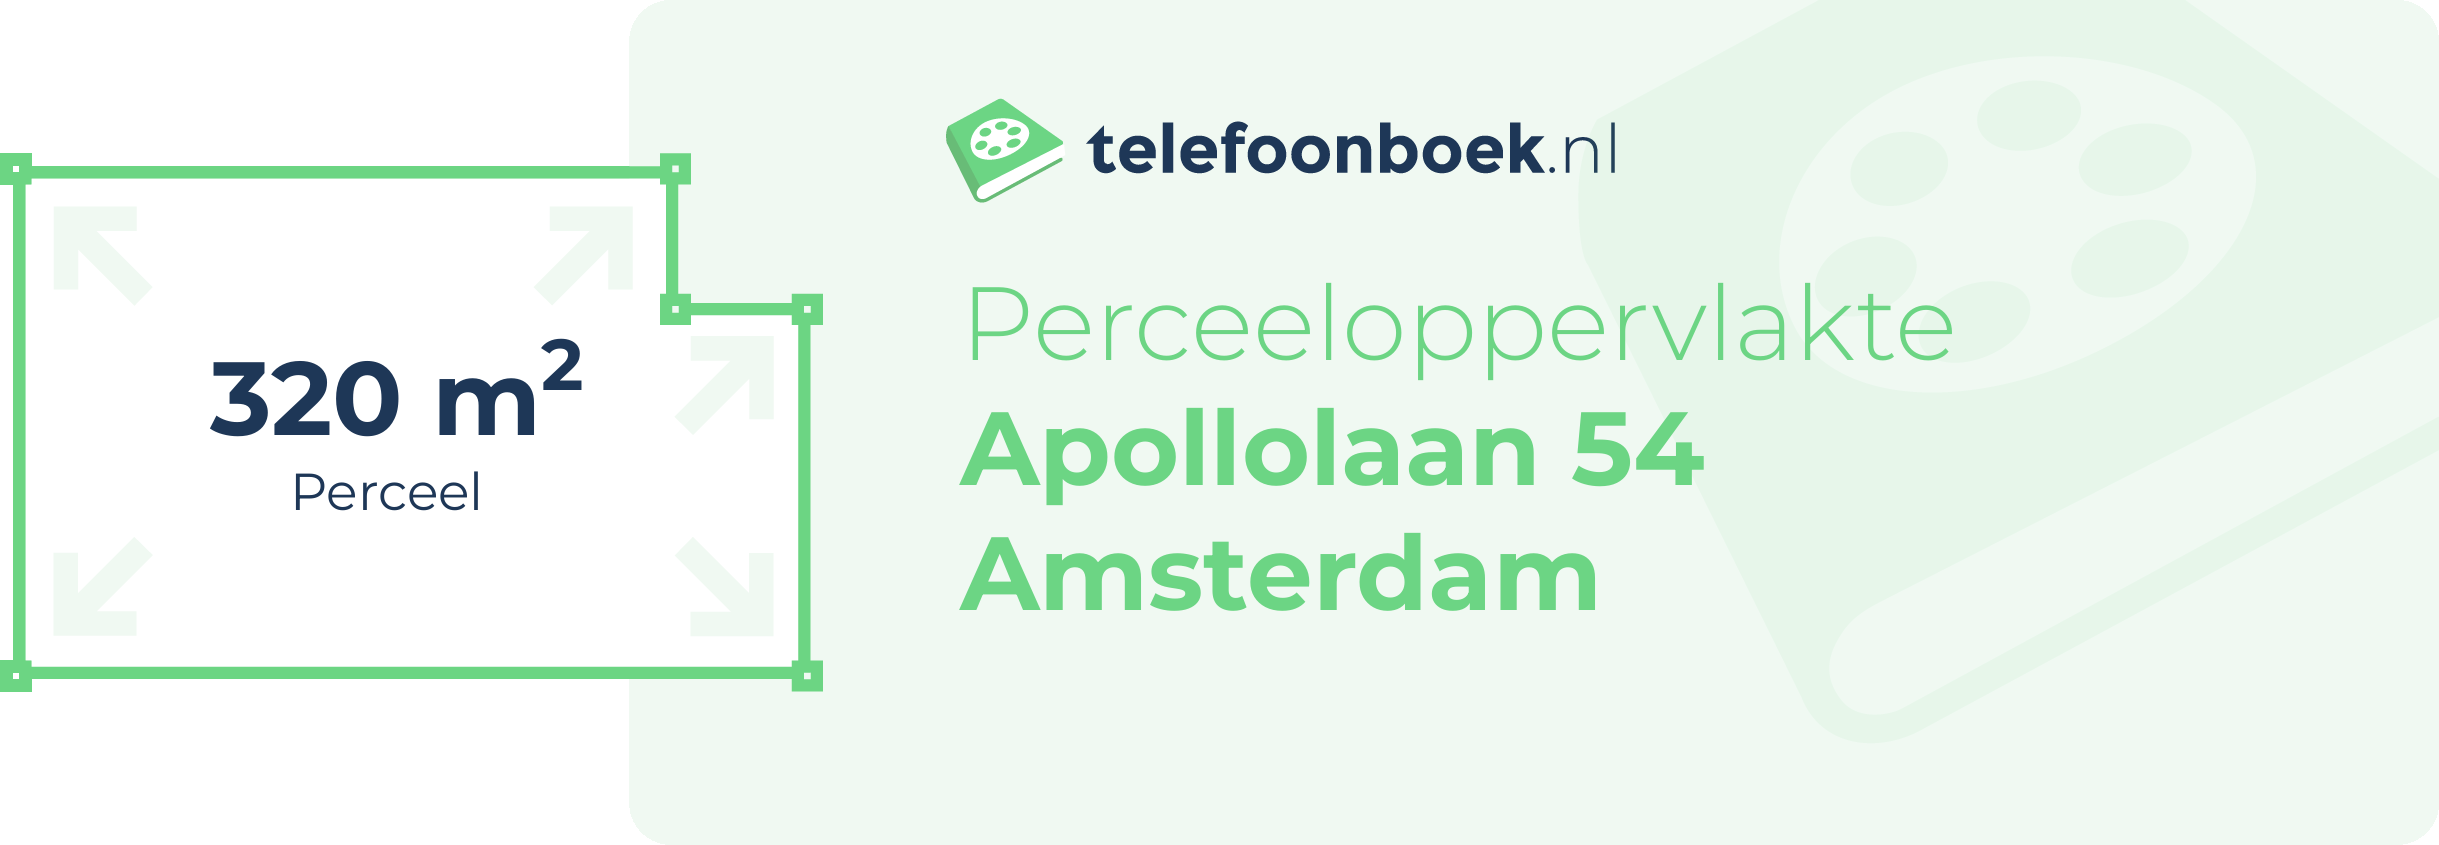 Perceeloppervlakte Apollolaan 54 Amsterdam